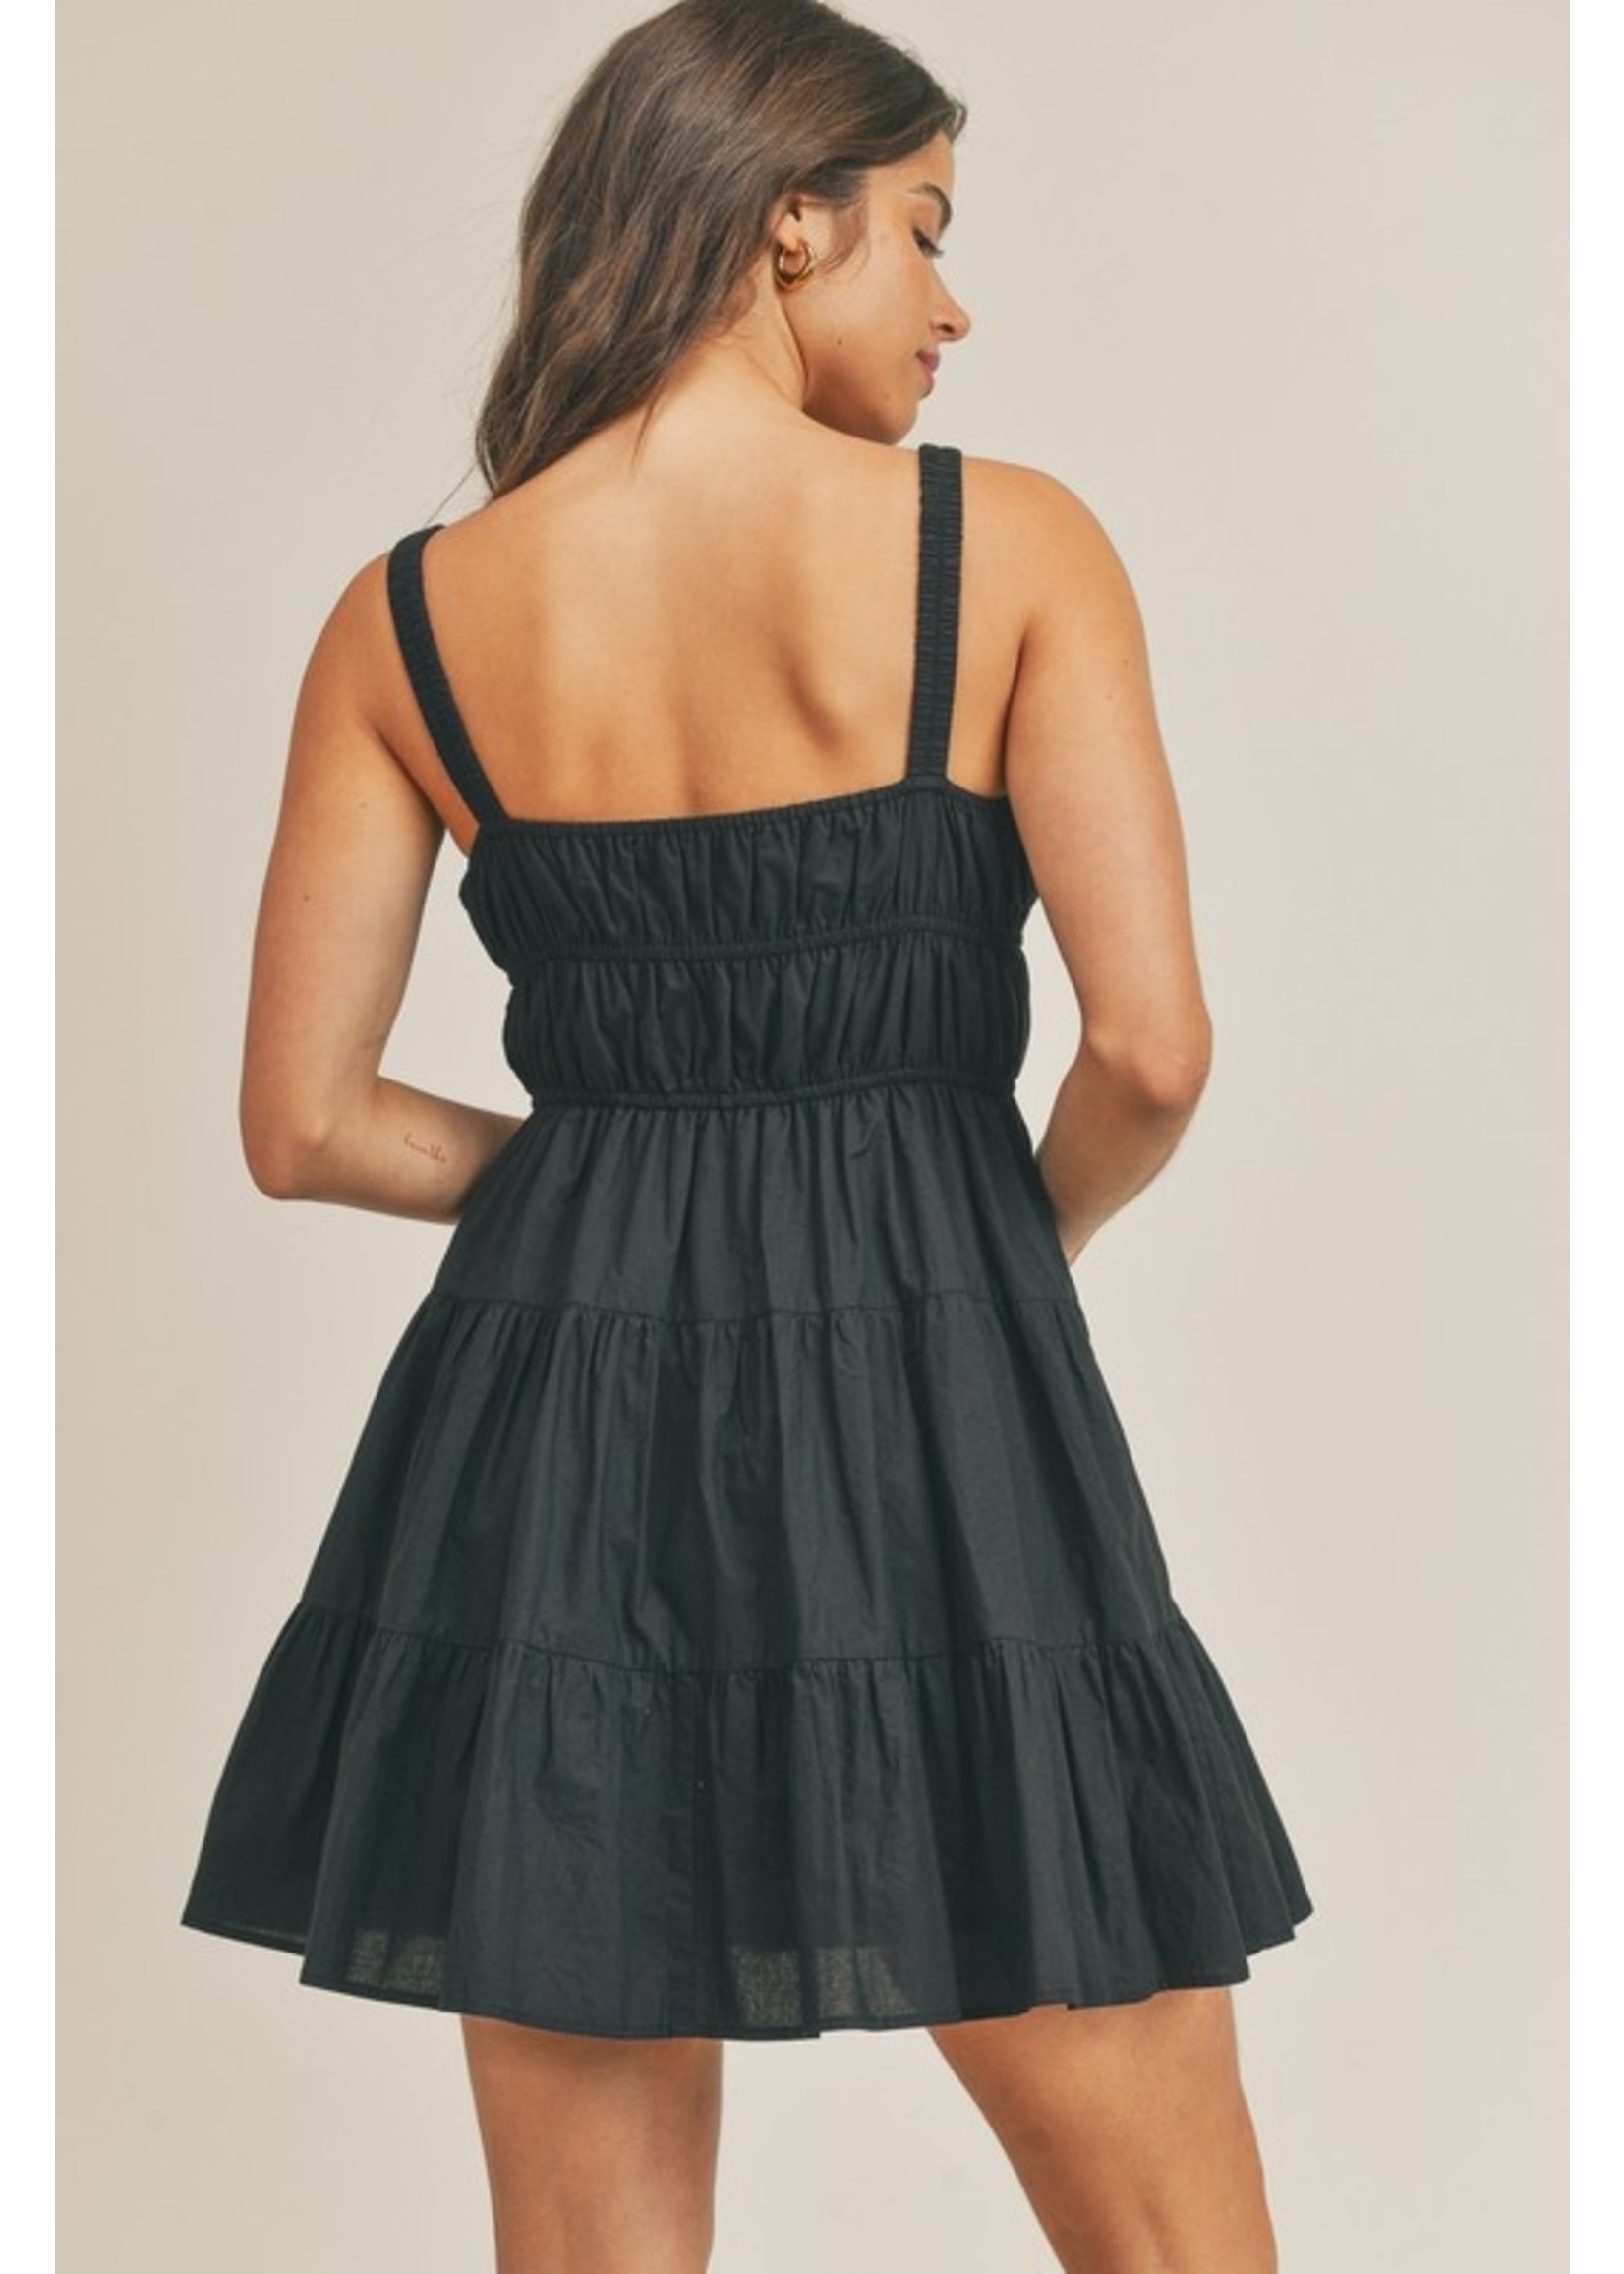 Tiered Cami Mini Dress w/ Elastic Waist Black